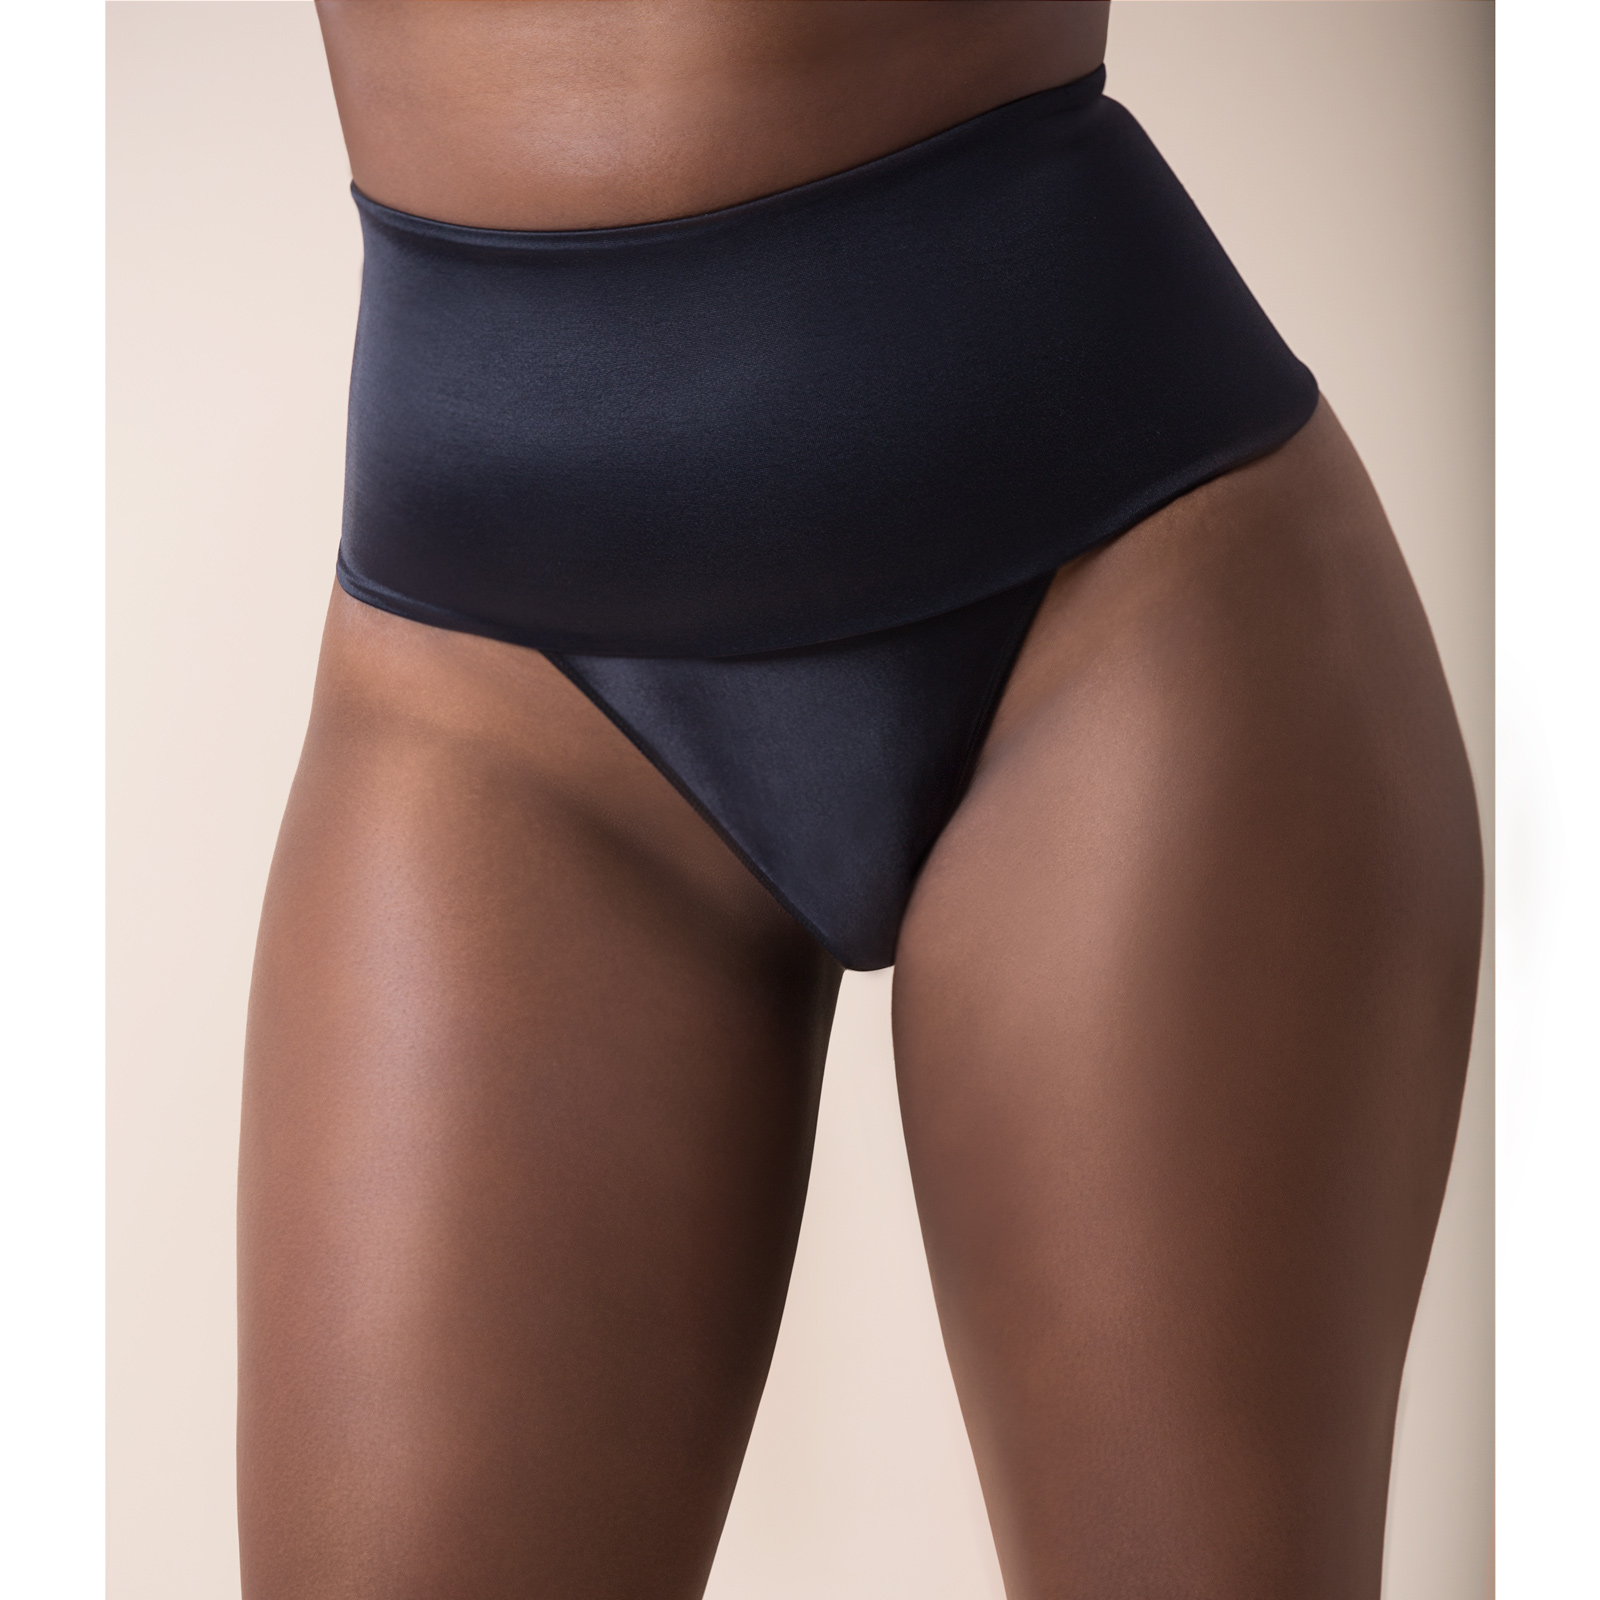 Padded Panty – Lulu Lingerie Nigeria, Buy online Bras, Underwear,  Sleepwear- LuLu Lingerie Limited